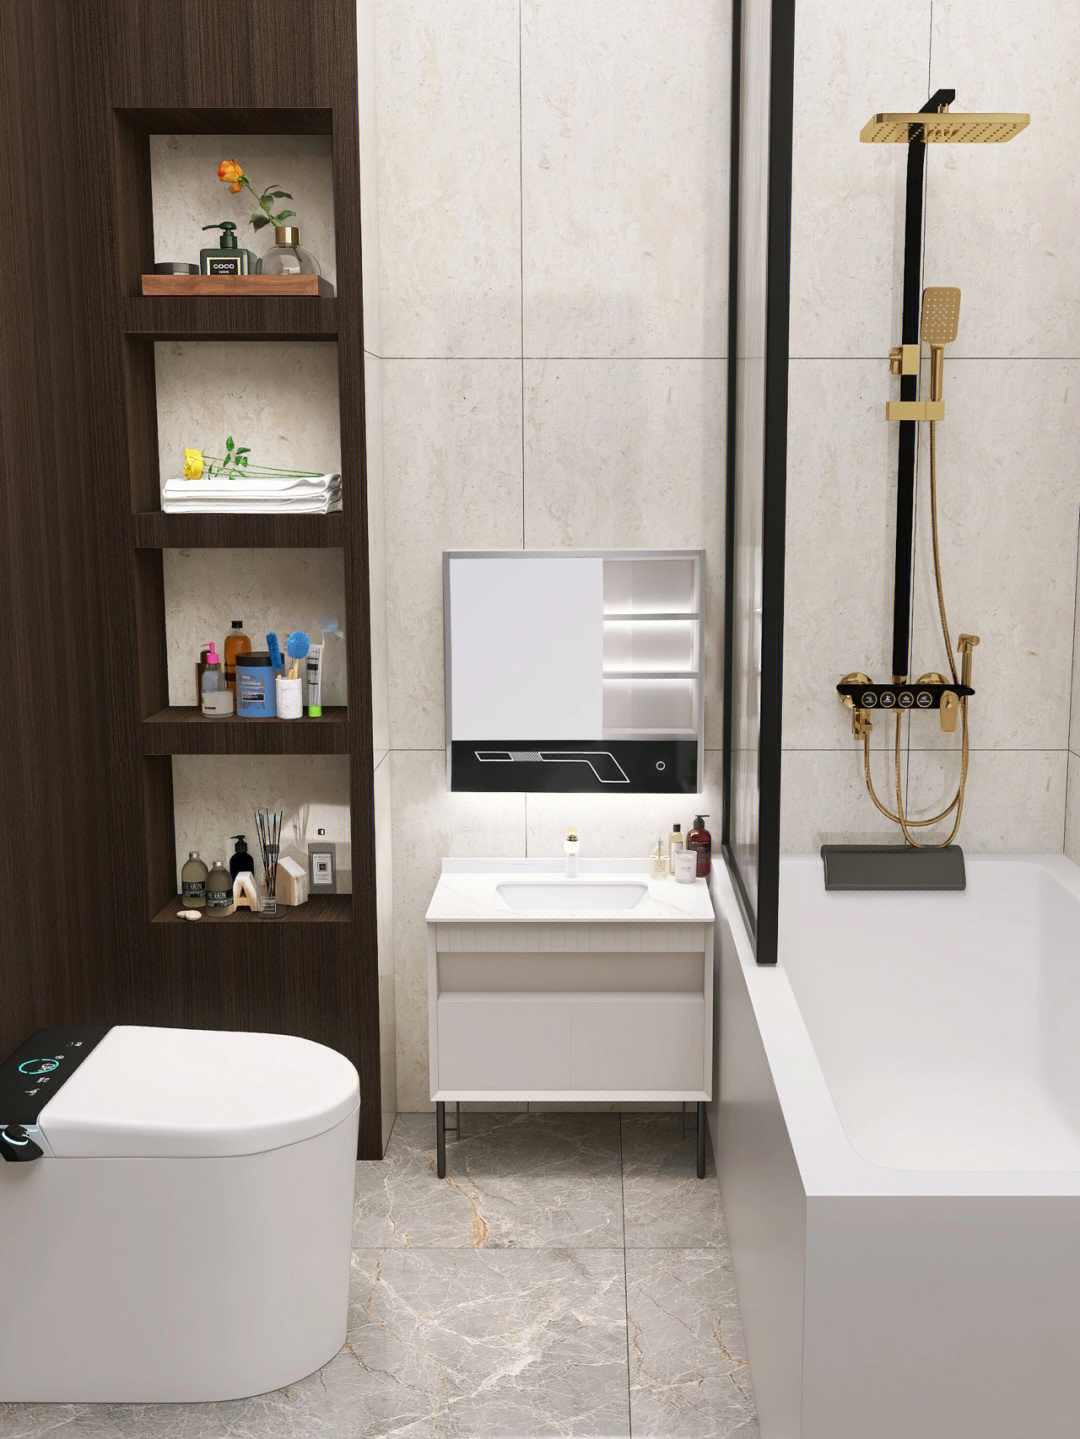 95暖白色墙面搭配上浅奶茶色简约浴室柜,让整个空间看起来更加舒适